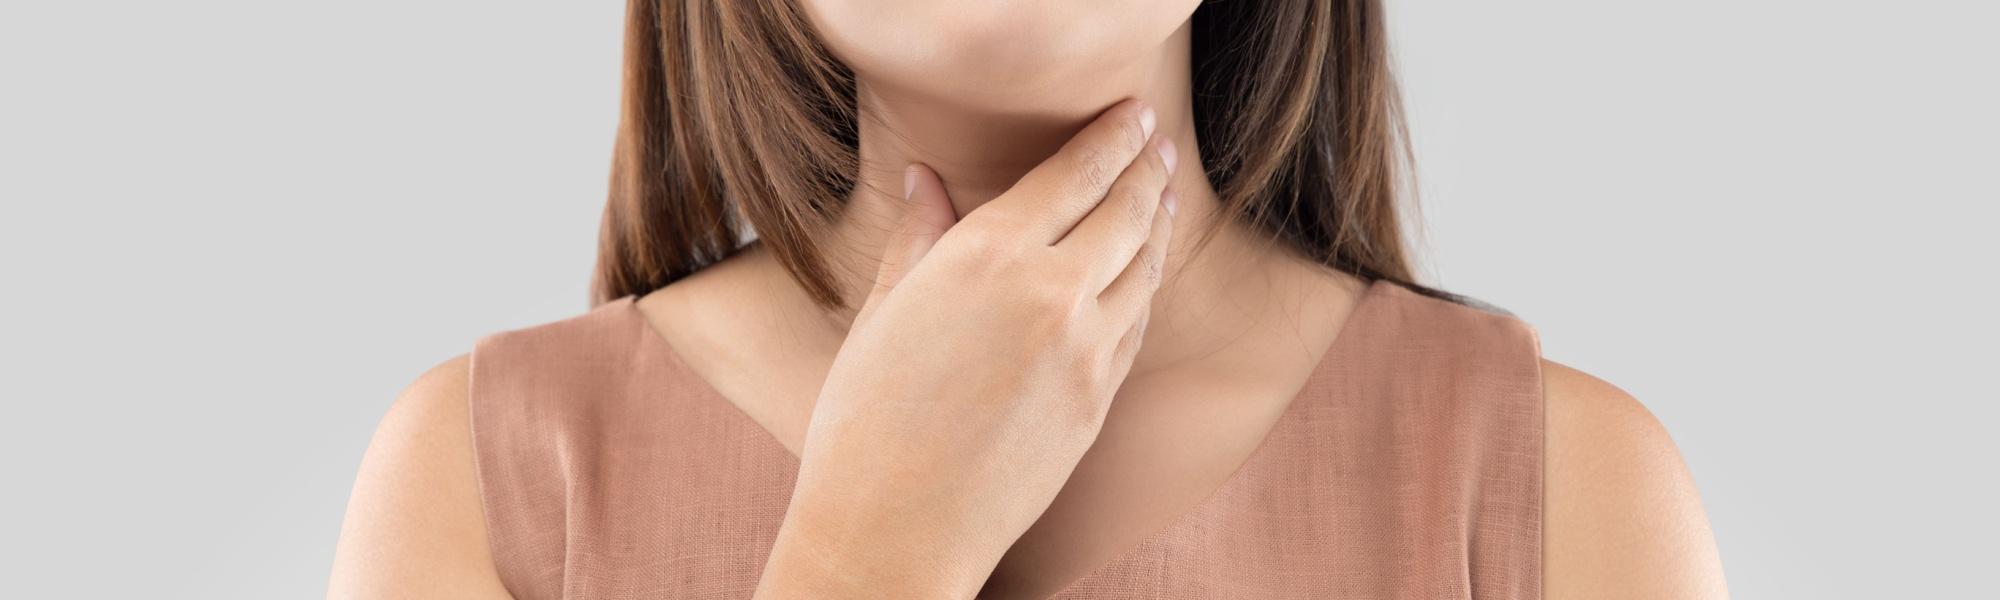 Rak rdzeniasty tarczycy — co to jest? Objawy, diagnostyka, rokowanie i leczenie